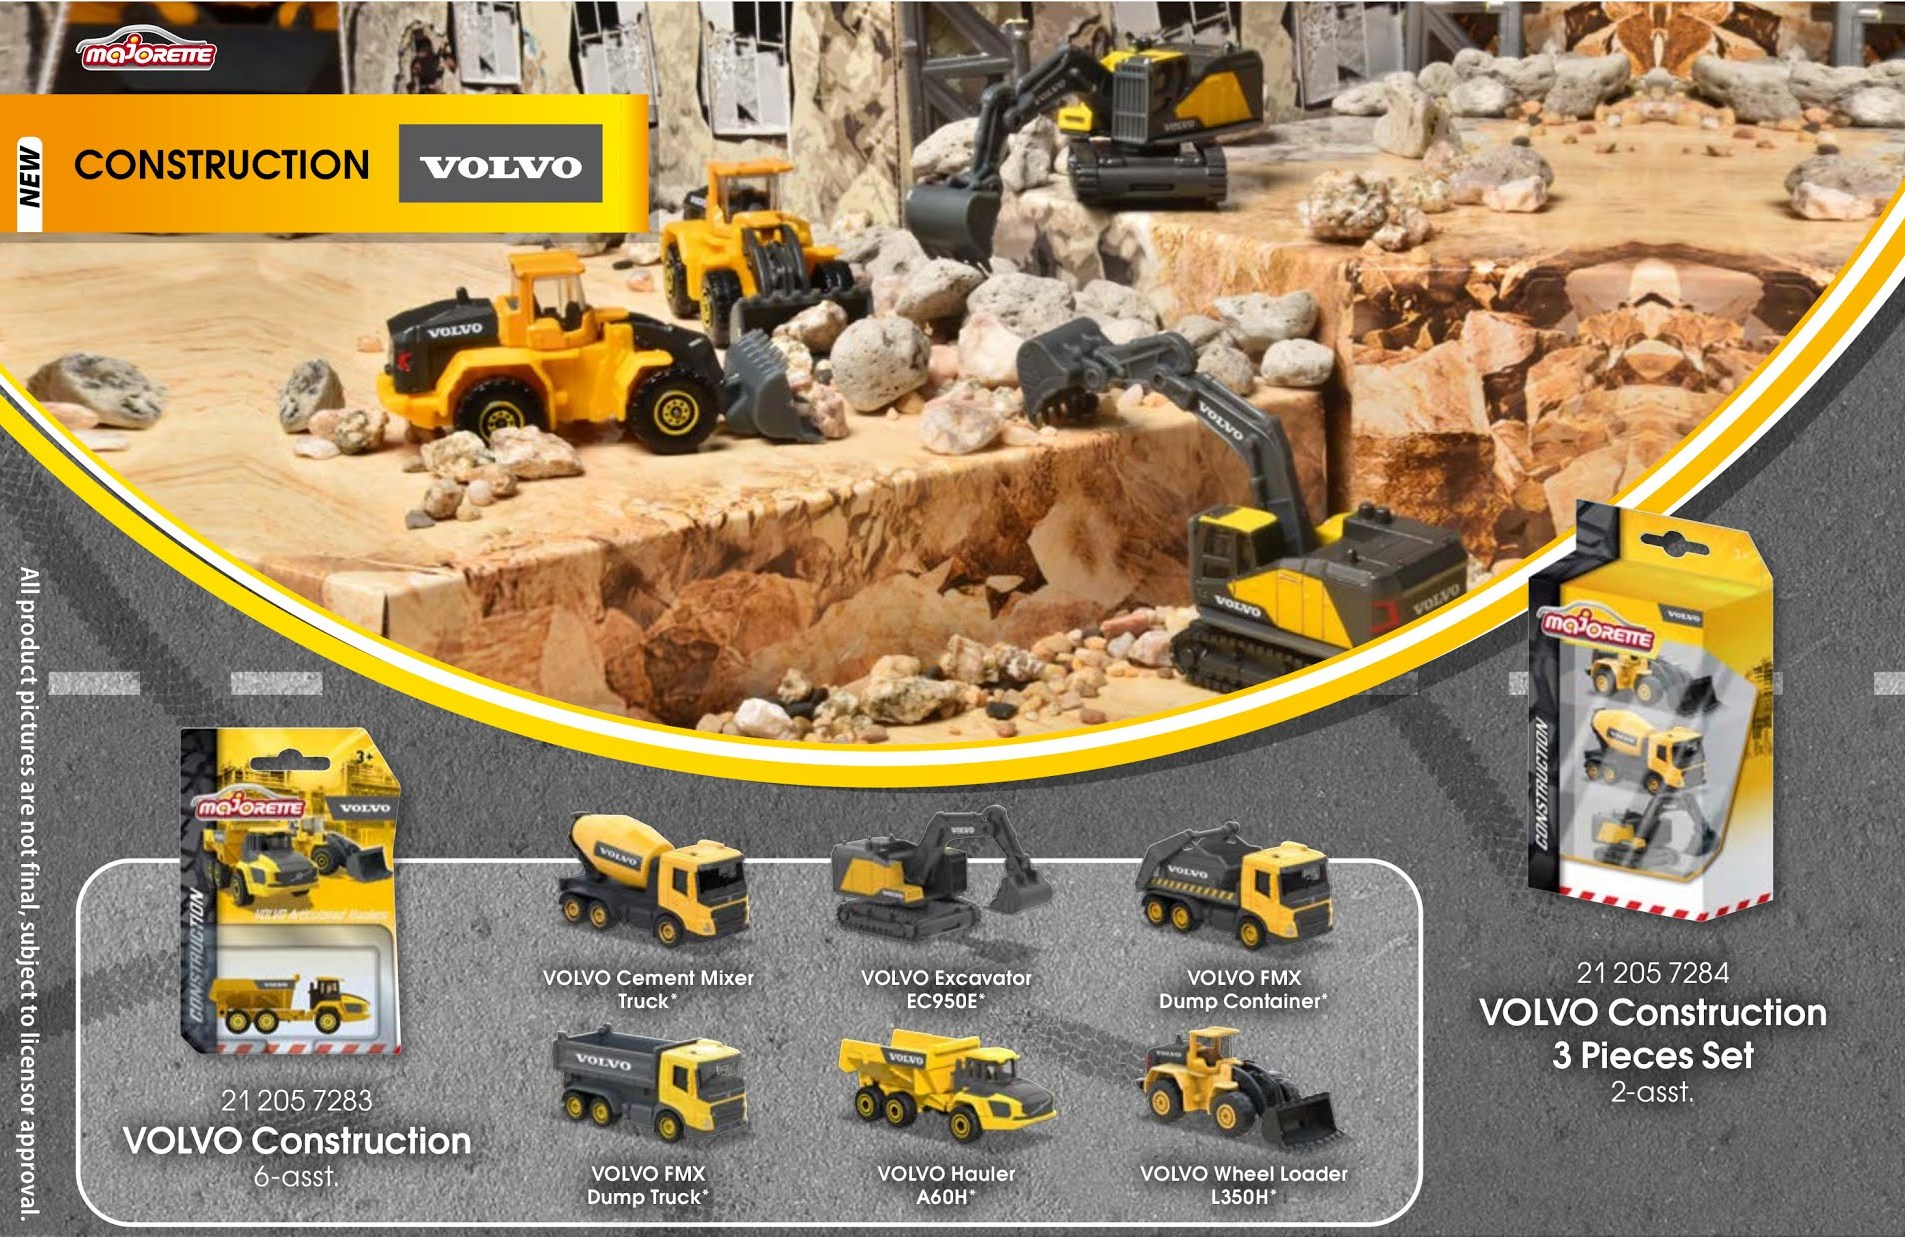 Volvo Construction Series, 6-asst. - CONSTRUCTION - MAJORETTE COLLECTION  PREMIUM - Marques & Produits 